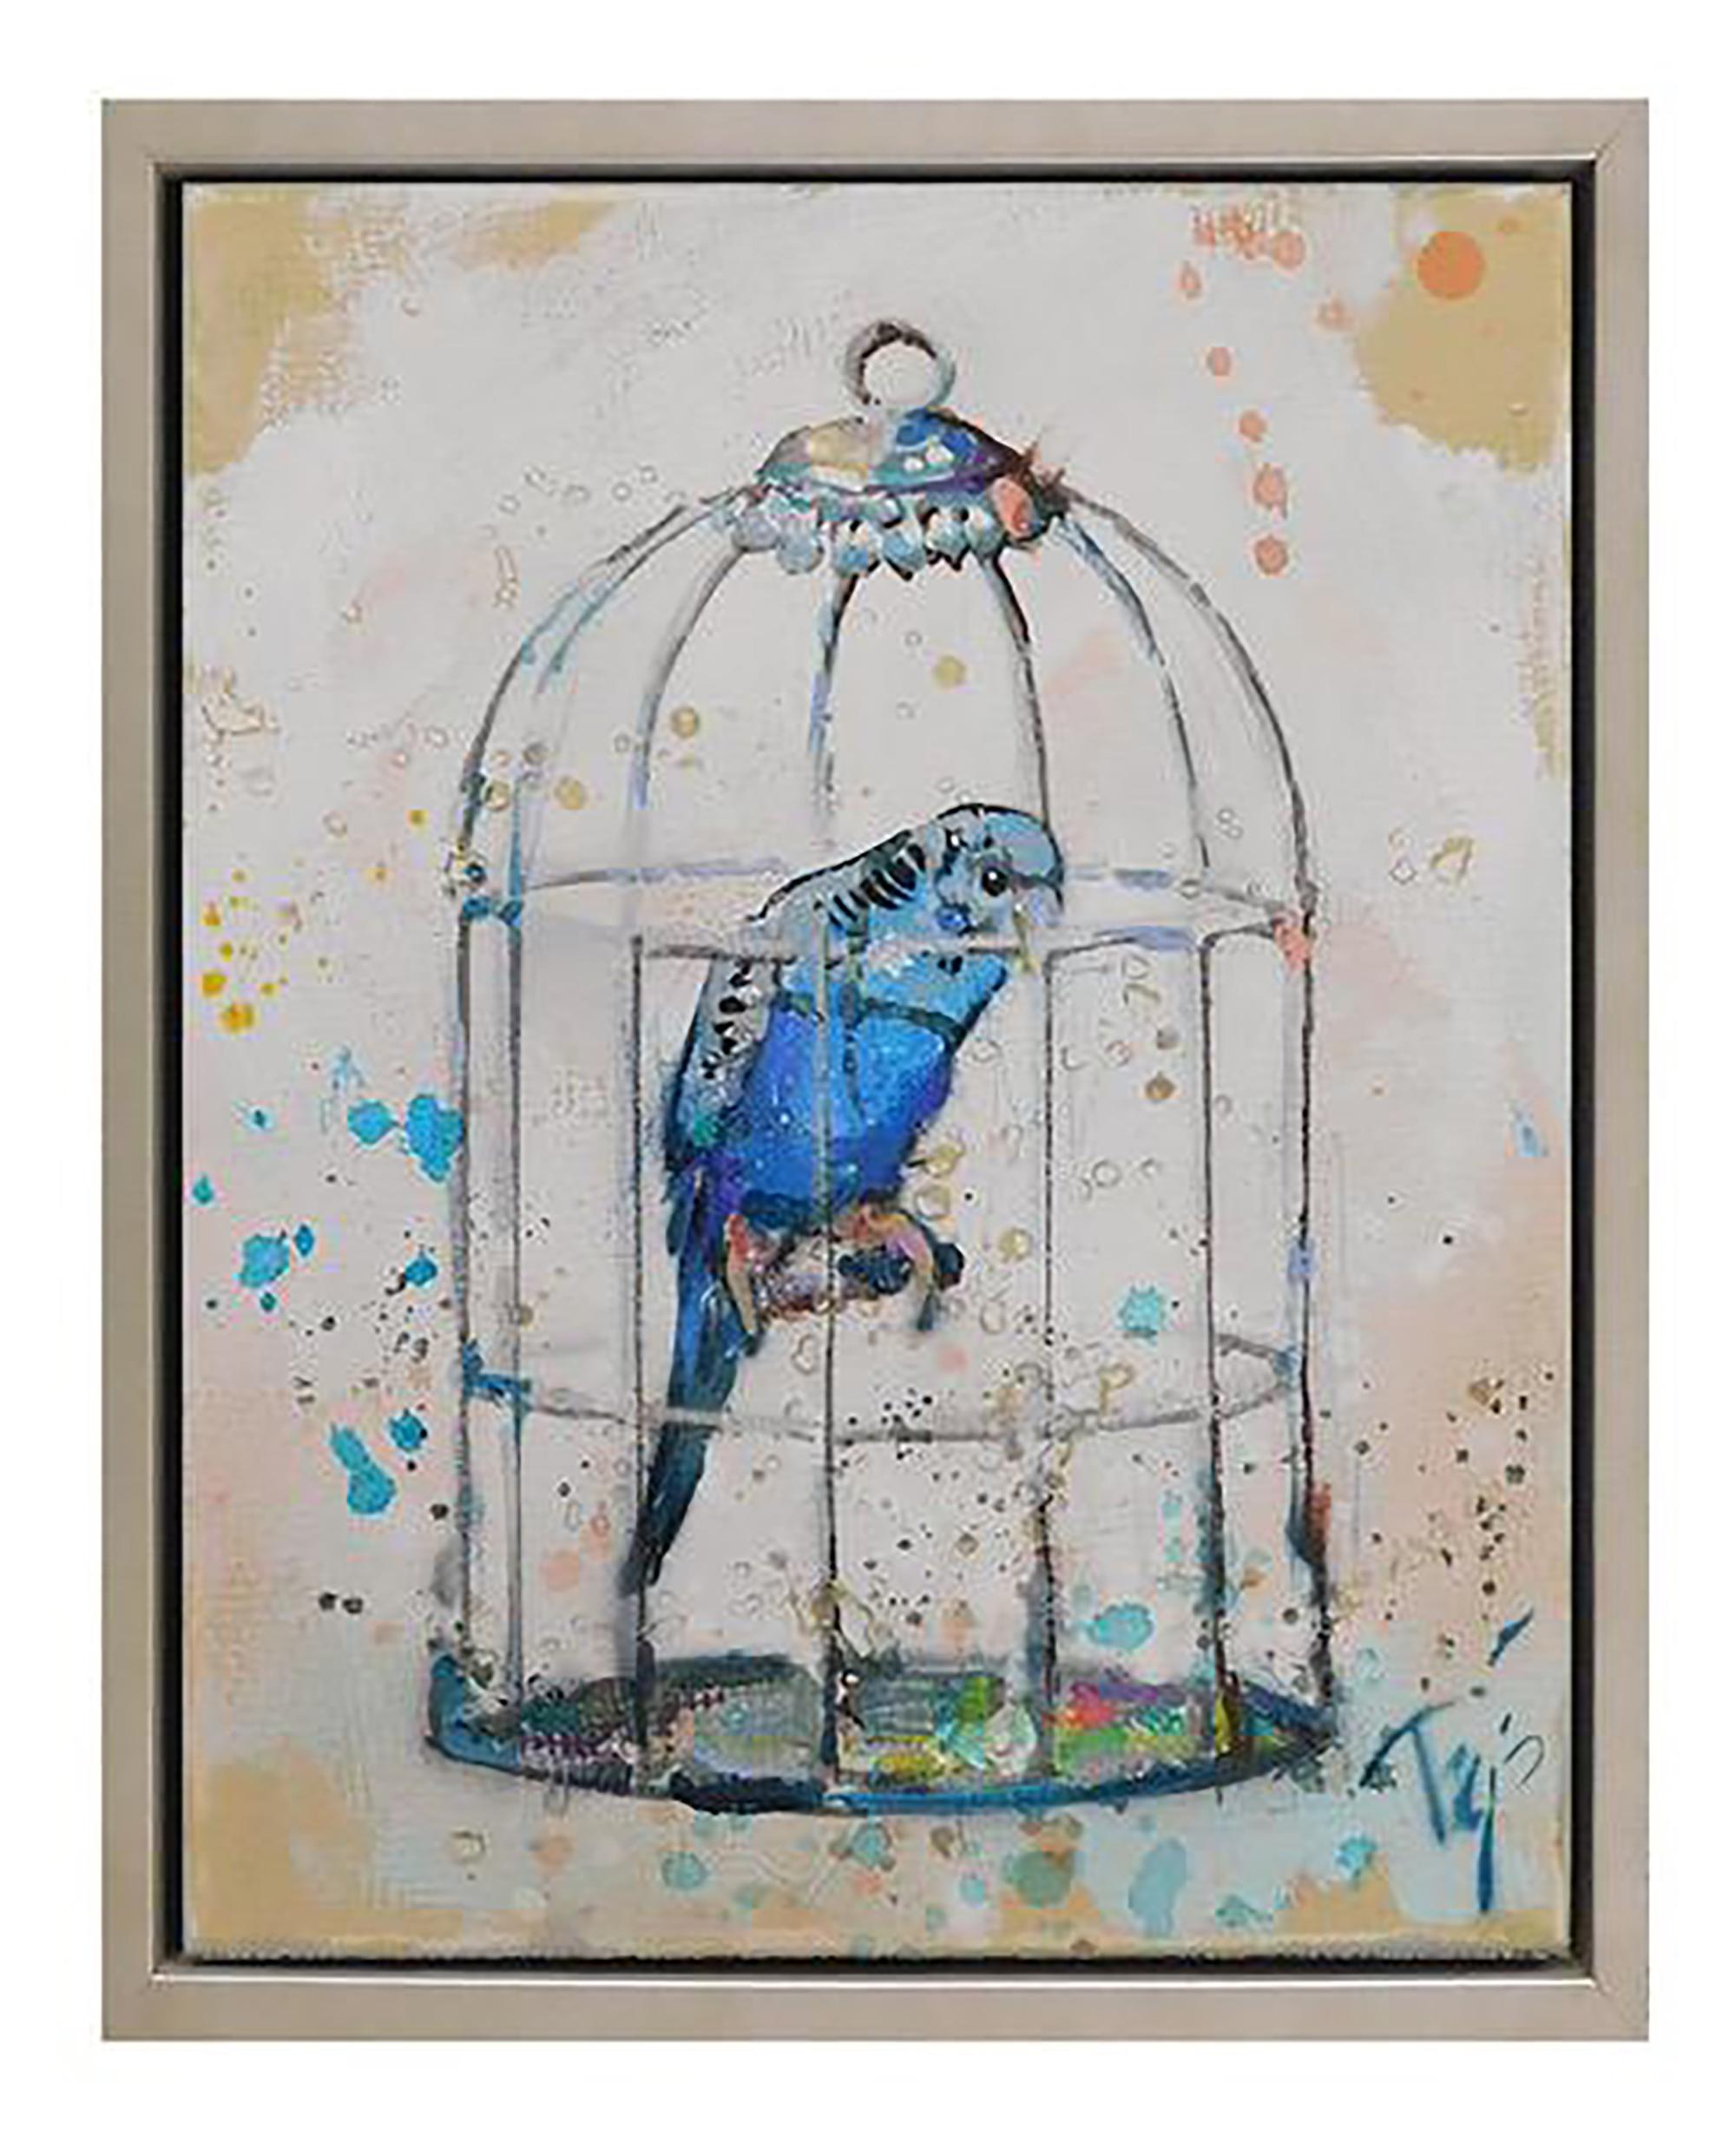 Cette peinture, « Blue Birdie », est une peinture à l'huile sur toile de 14 x 11 cm de l'artiste Trip Park. Le tableau présente un oiseau exotique bleu coloré à l'intérieur d'une cage. Des accents de feuilles d'or et des couches de peinture